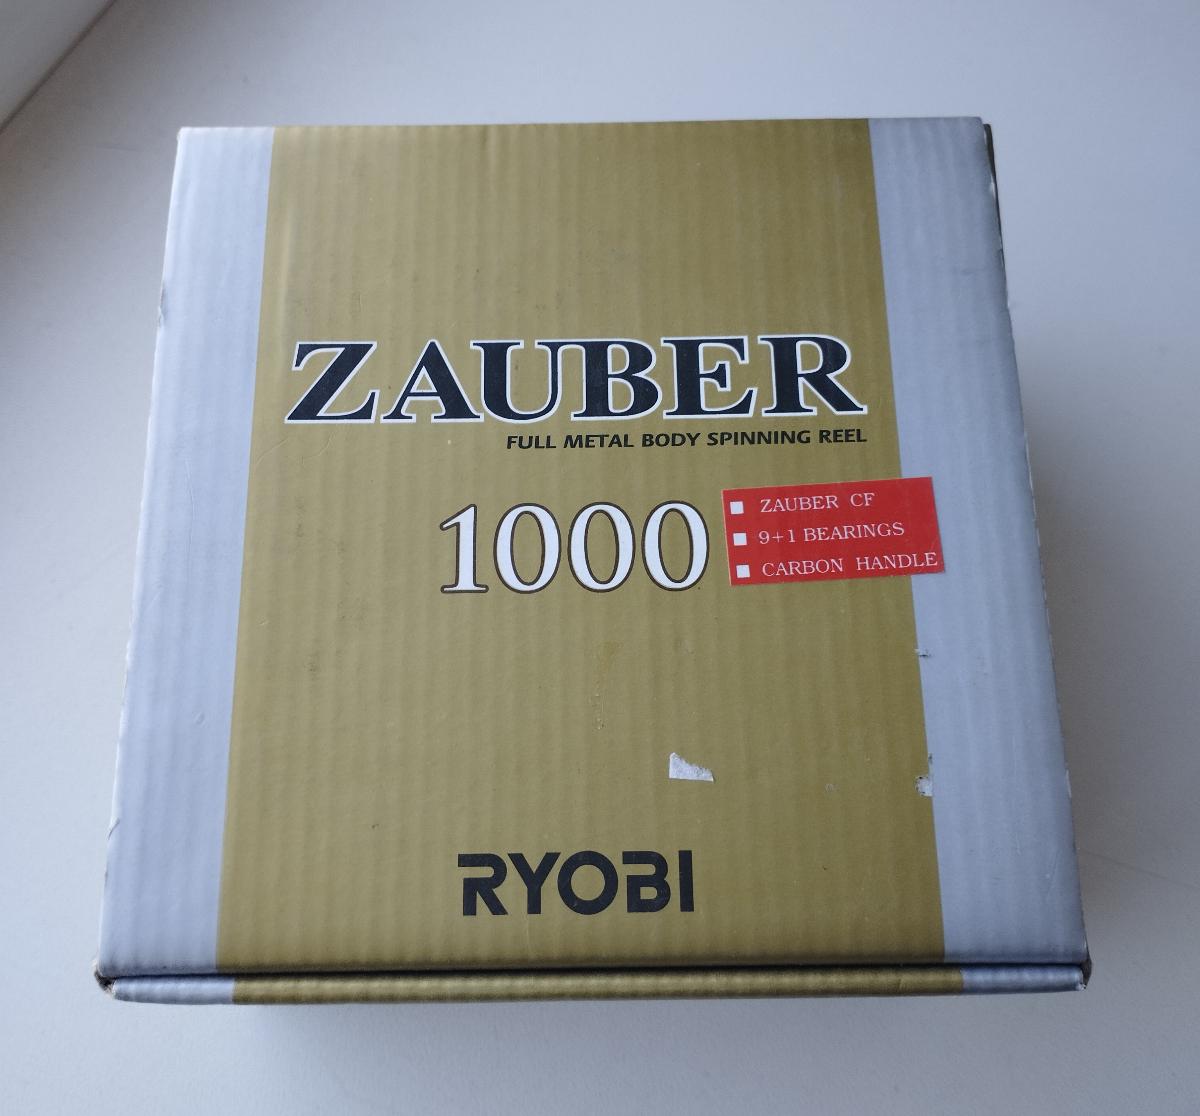 Катушка Ryobi Zauber 1000